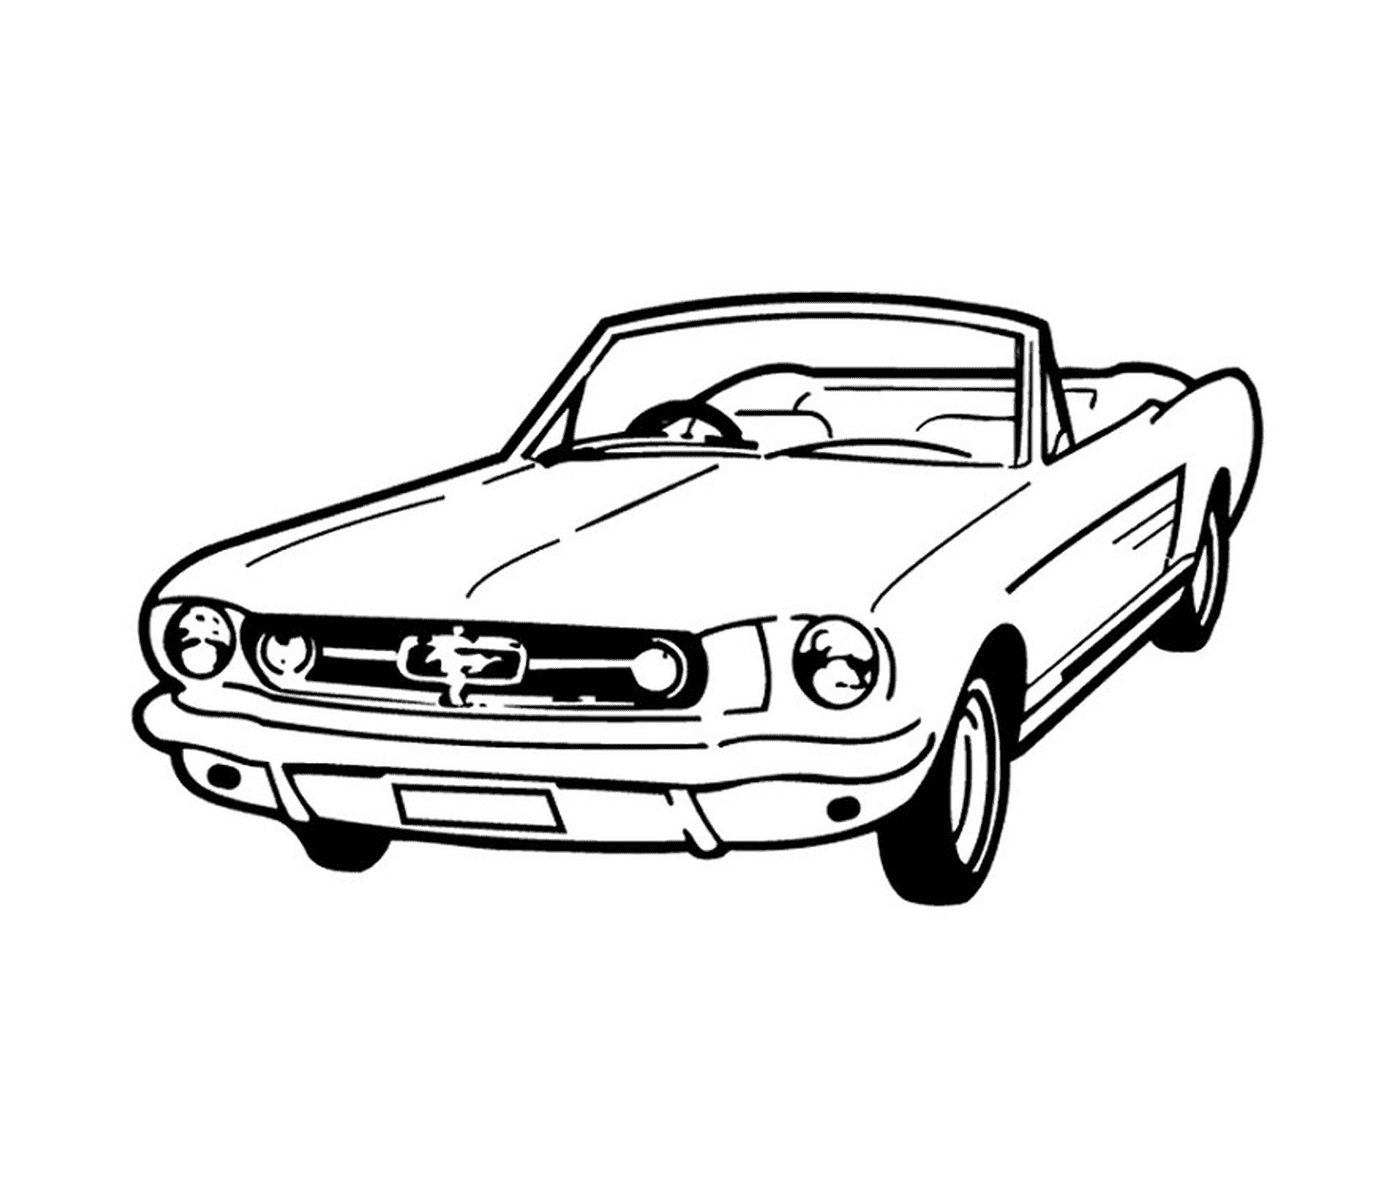  Coche de Mustang Vintage 